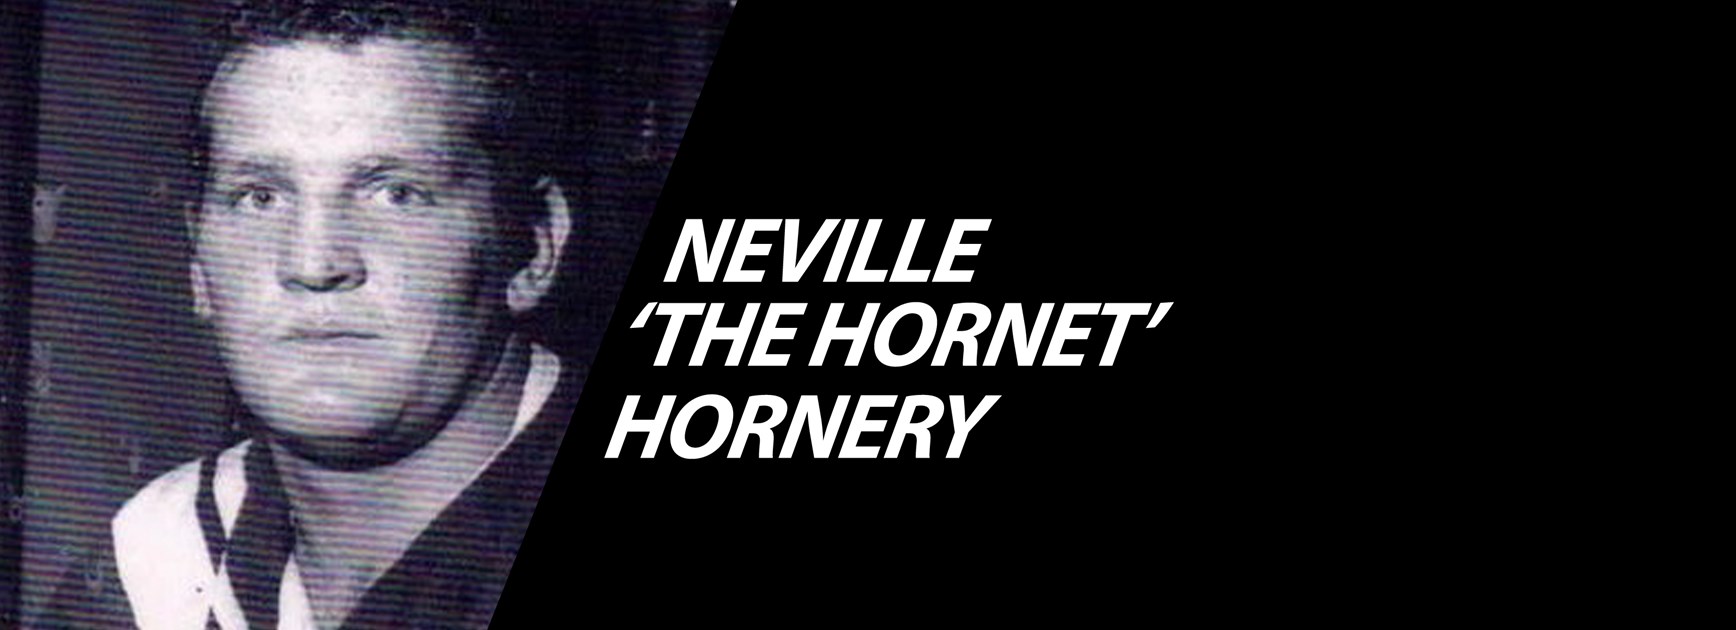 Vale Neville 'The Hornet' Hornery